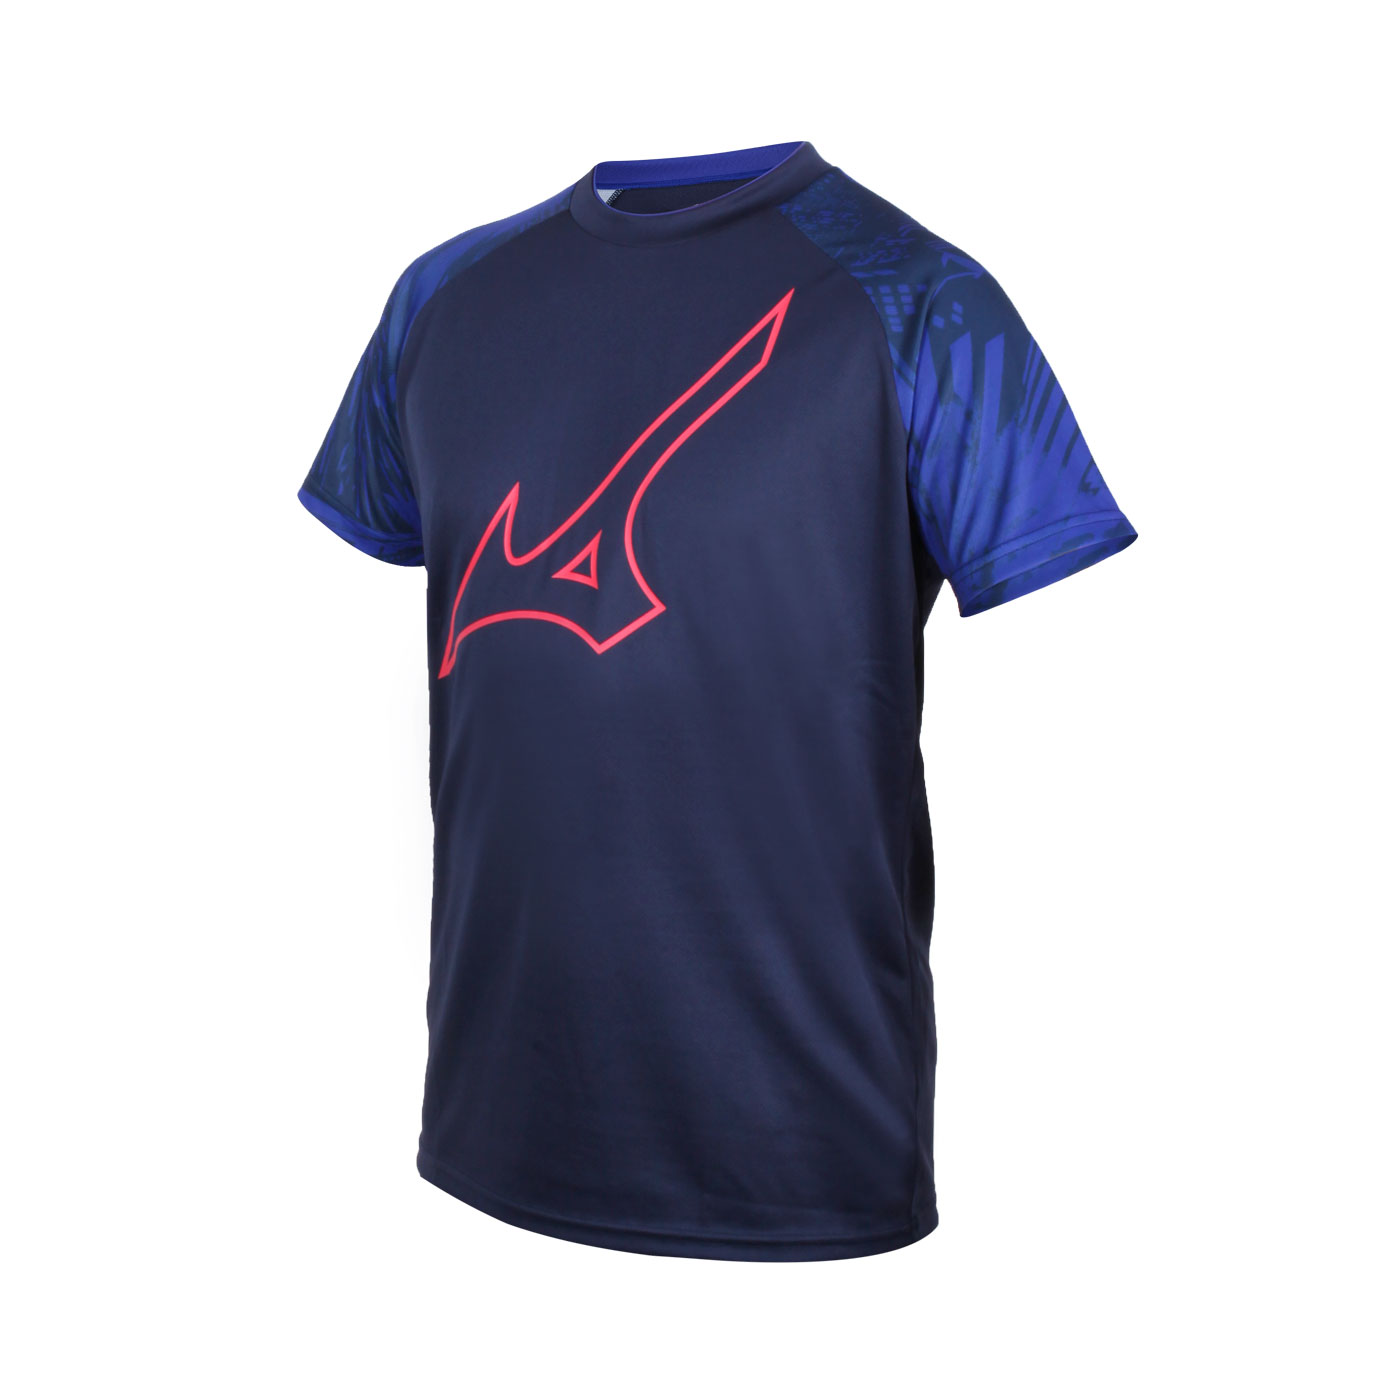 MIZUNO 男款世界大賽短袖T恤 V2MA050514 - 丈青藍紅